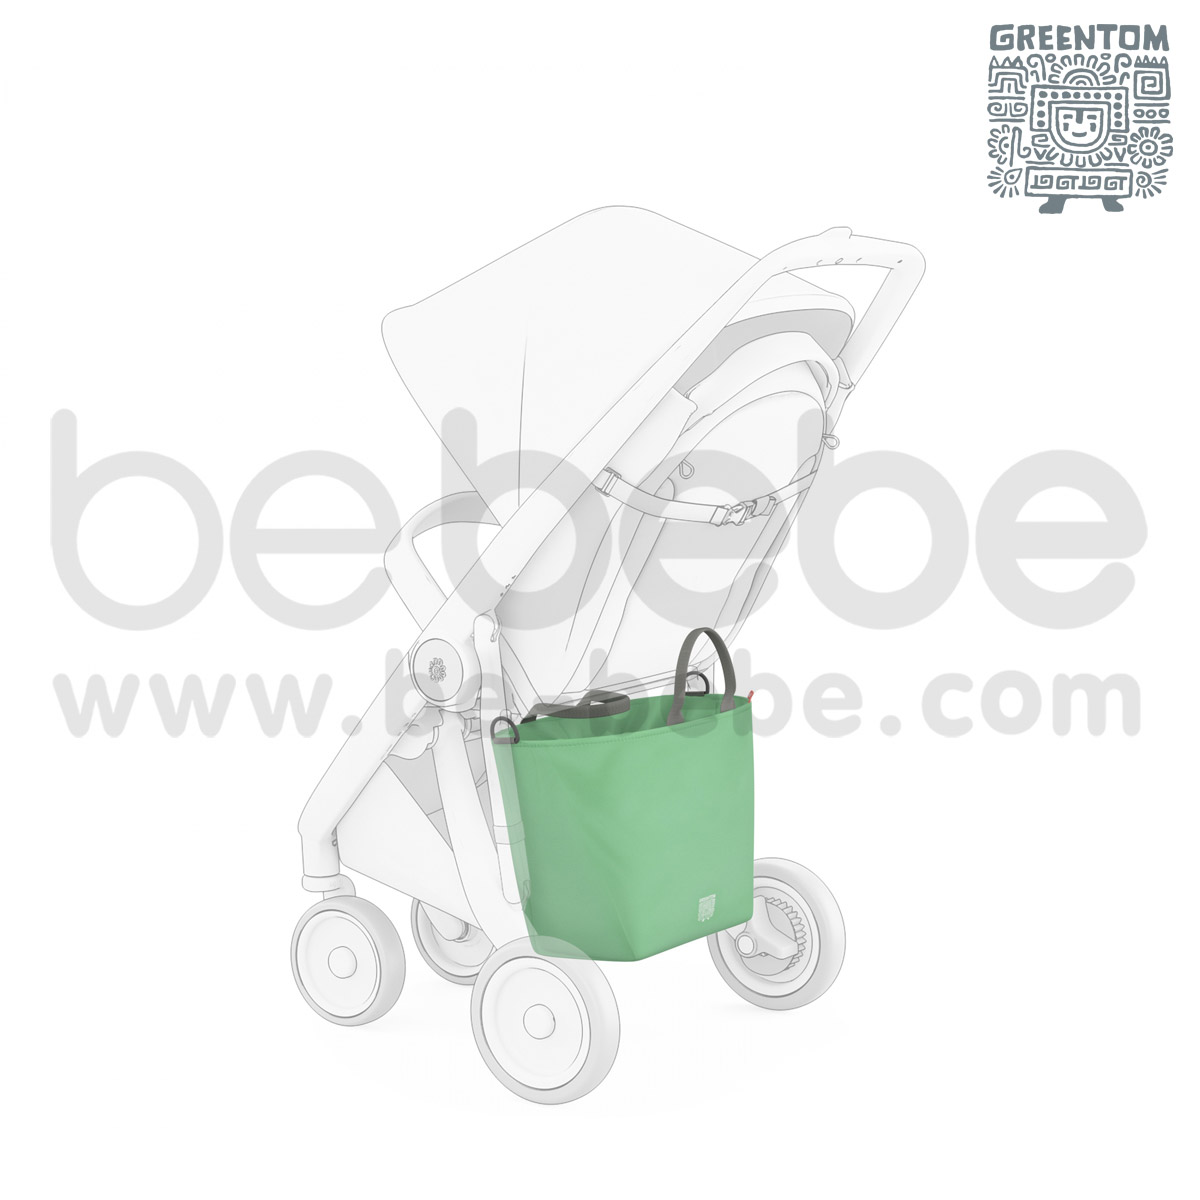 Greentom : Shopping Bag / Orange